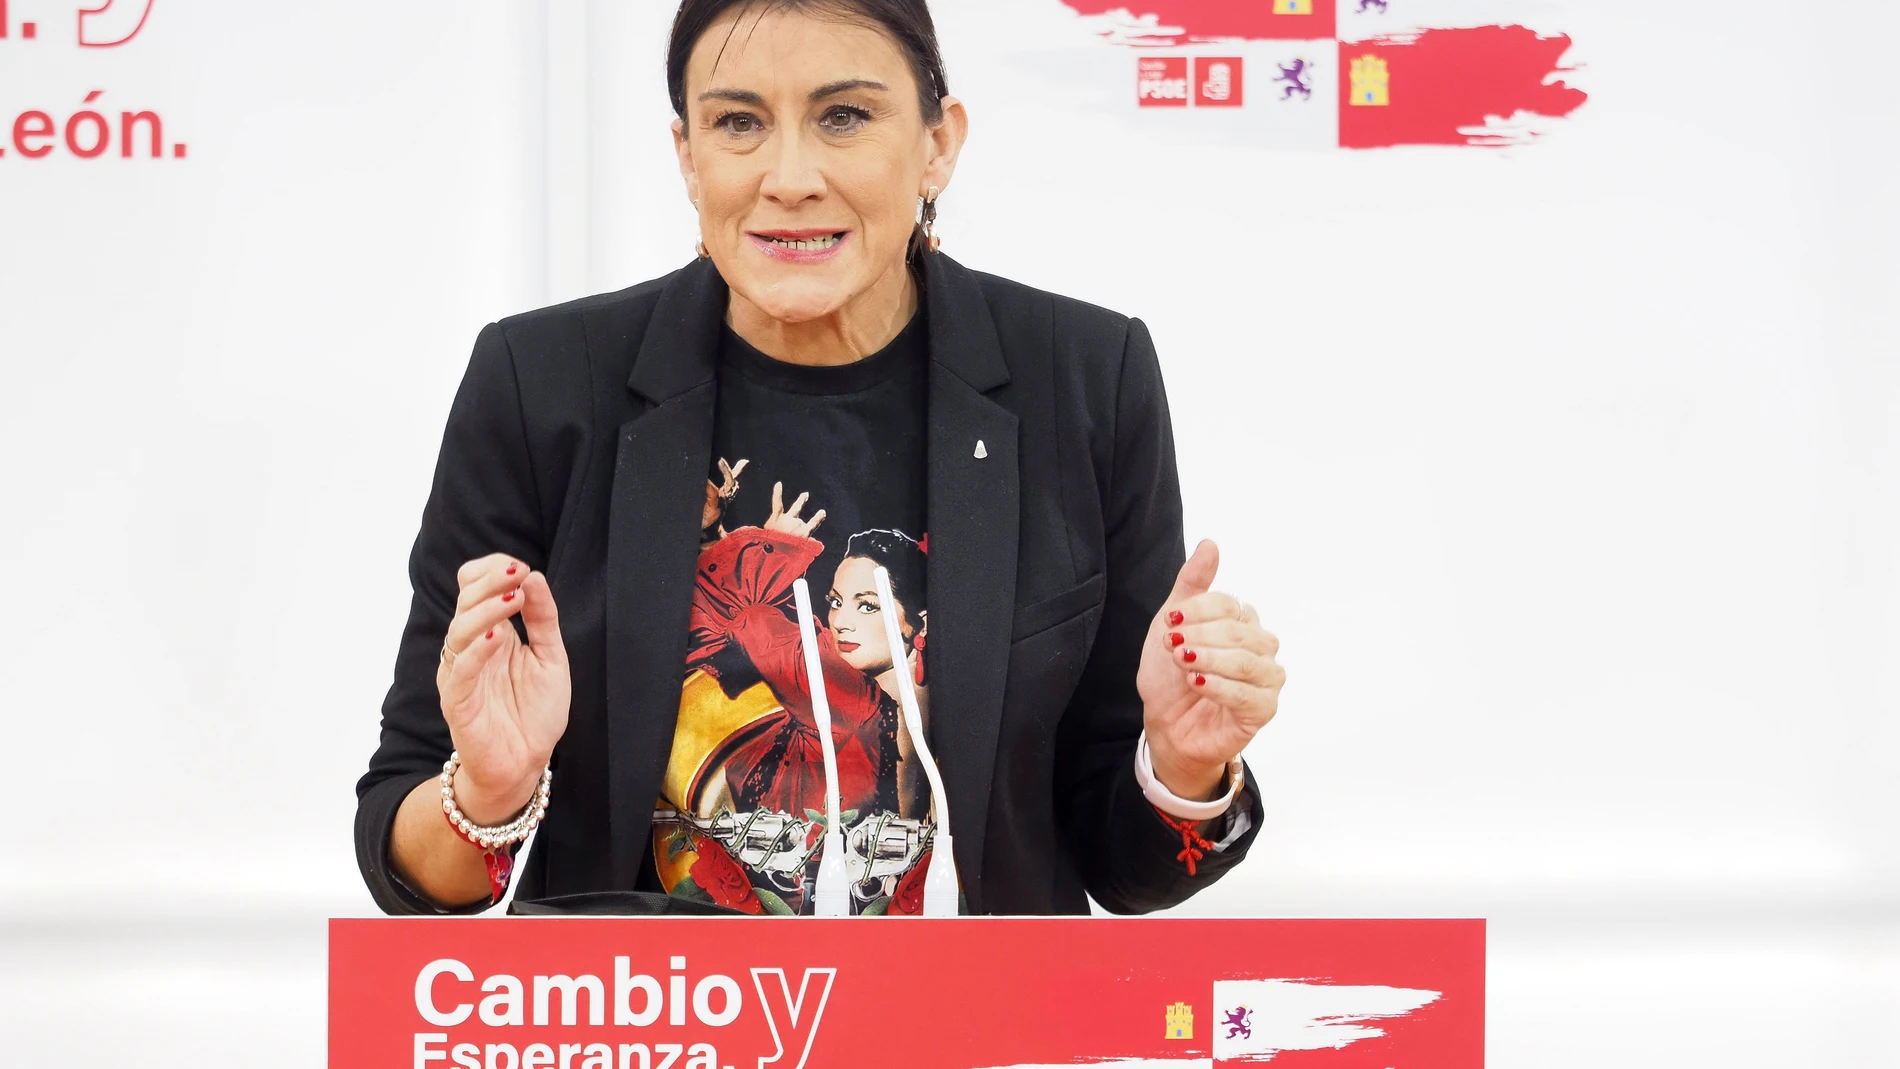 La secretaria de Organización del PSOECyL, Ana Sánchez, ha dado positivo en covid